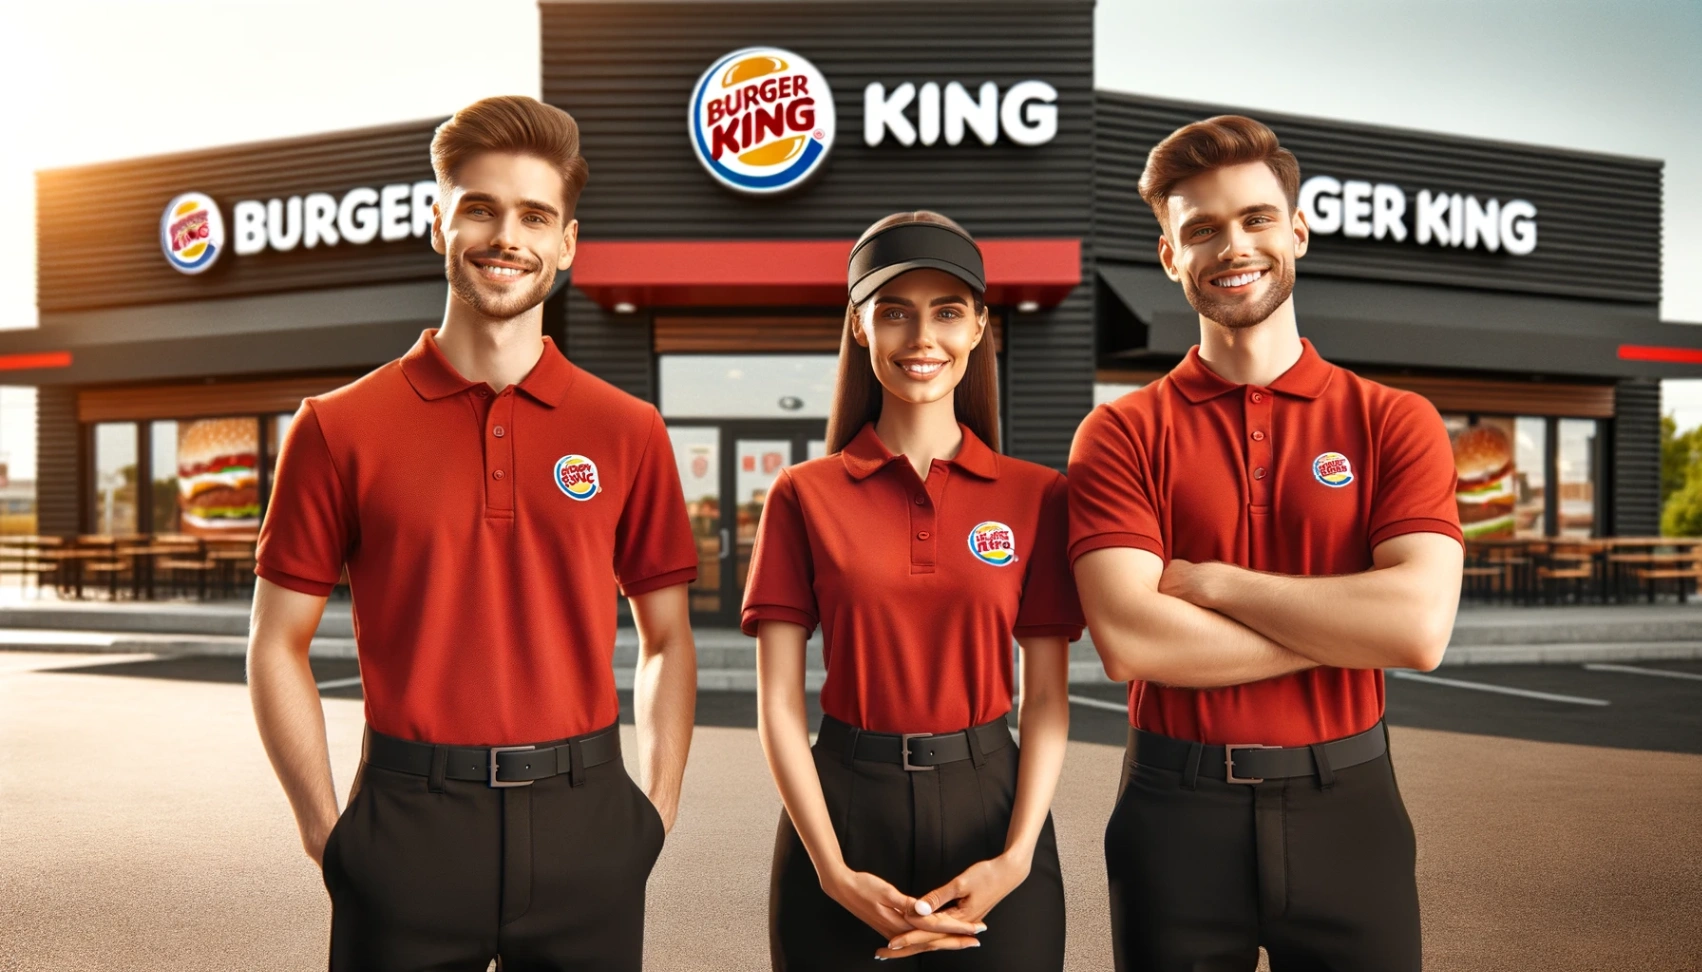 Burger King Jobb: Ansökningsprocessen Förenklad